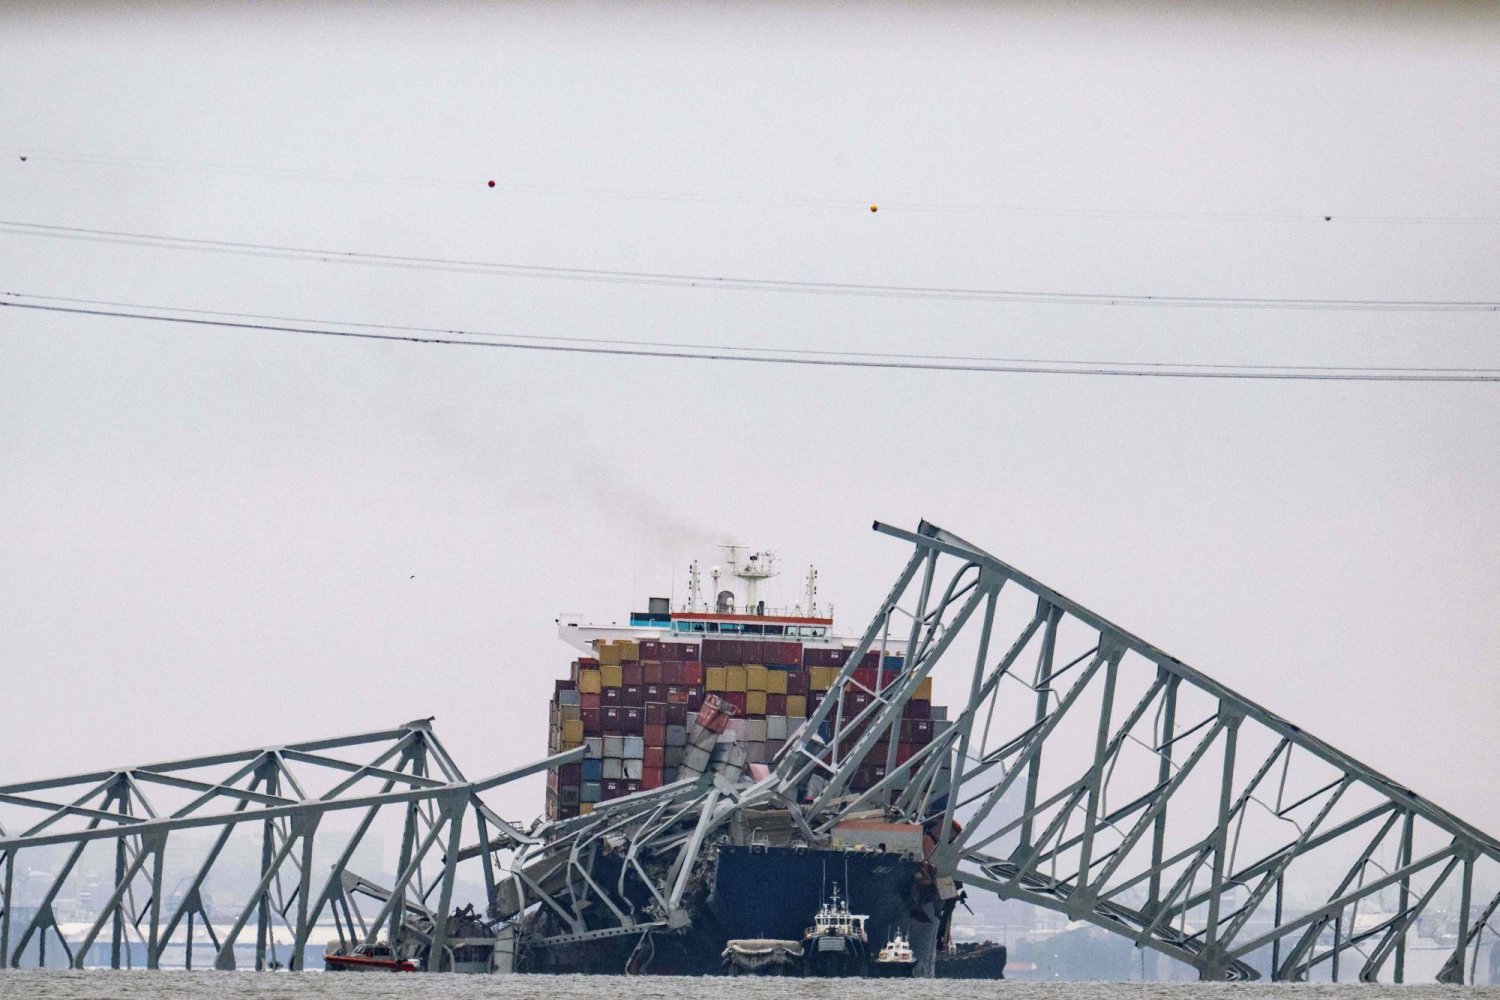 جسر «فرنسيس سكوت كي» المنهار فوق سفينة الحاويات «دالي» في بالتيمور (أ.ف.ب)